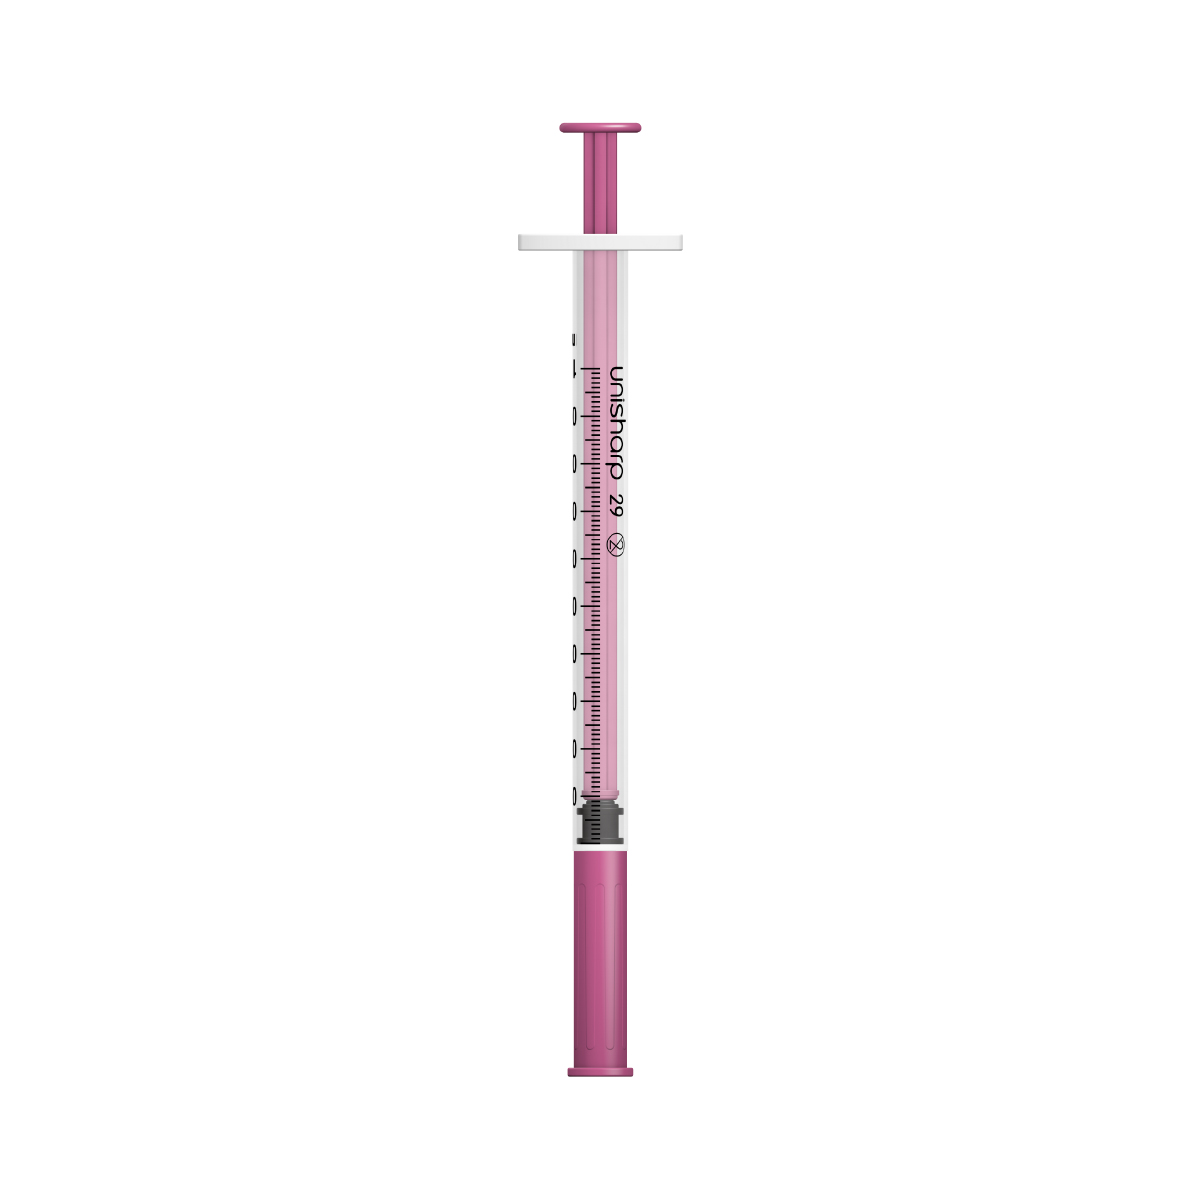 Unisharp 1ml 29G fixed needle syringe: pink